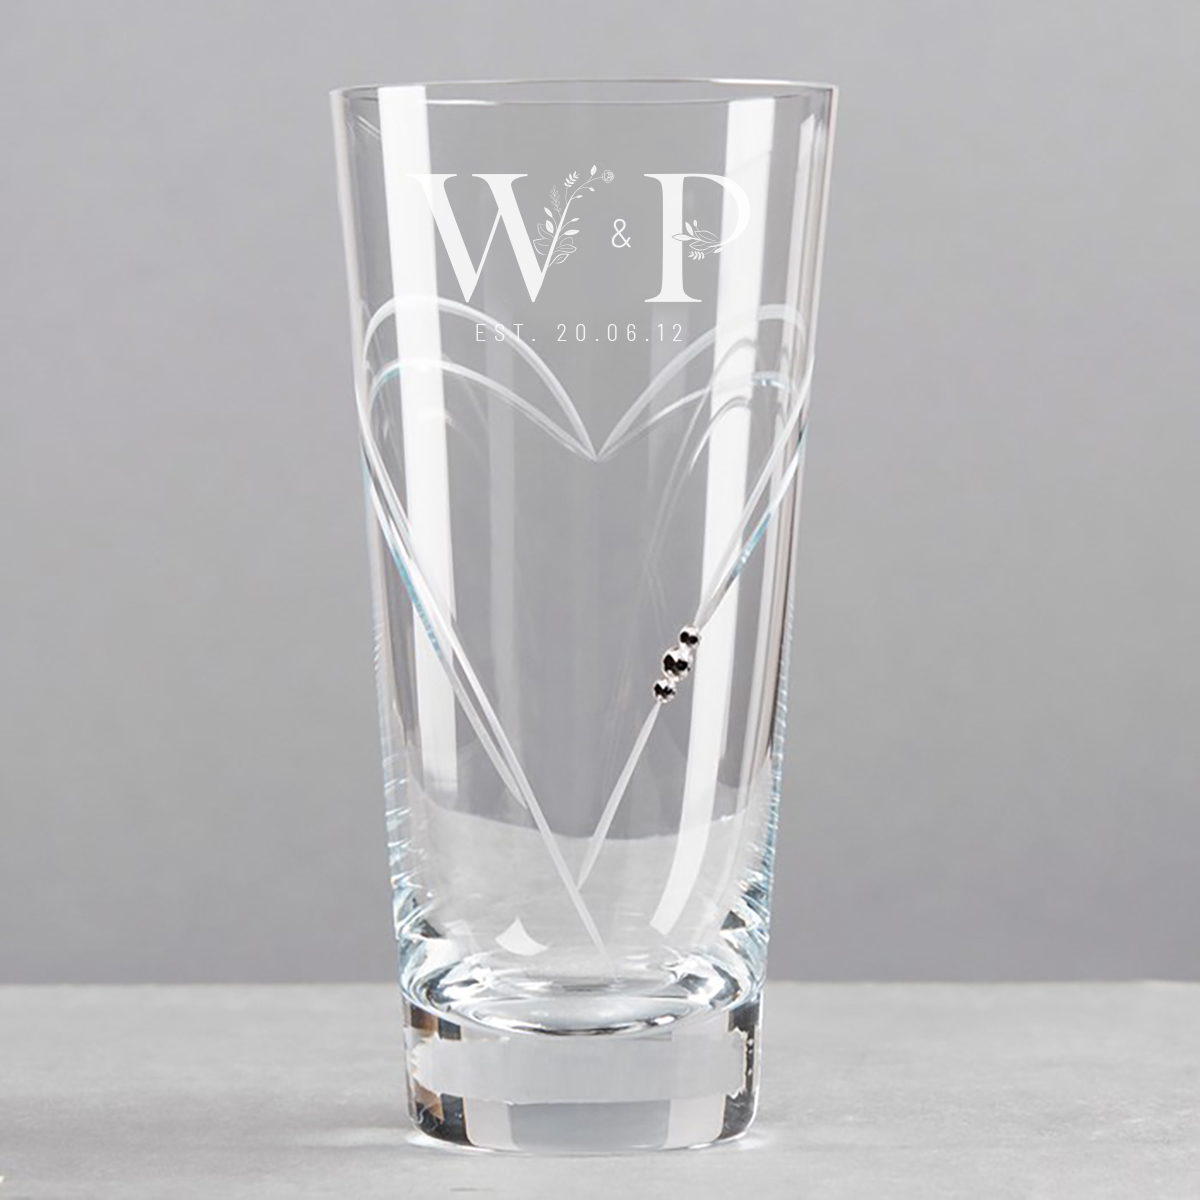 Engraved Swarovski Elements Glass Vase - Floral Initials